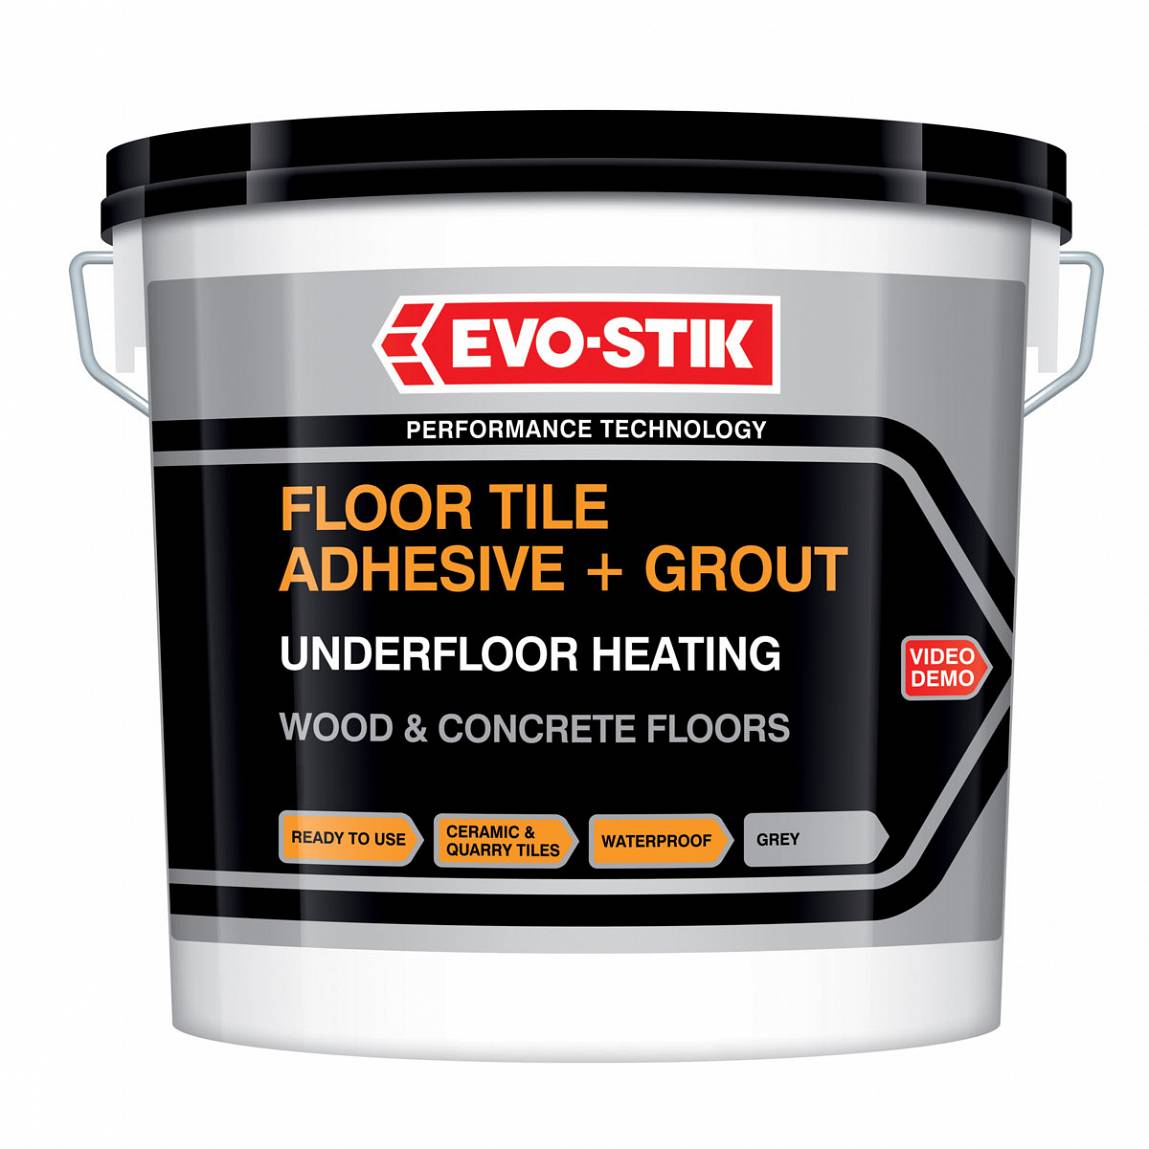 Wood/Concrete Floor Adhesive Trade 16.23kg | VictoriaPlum.com